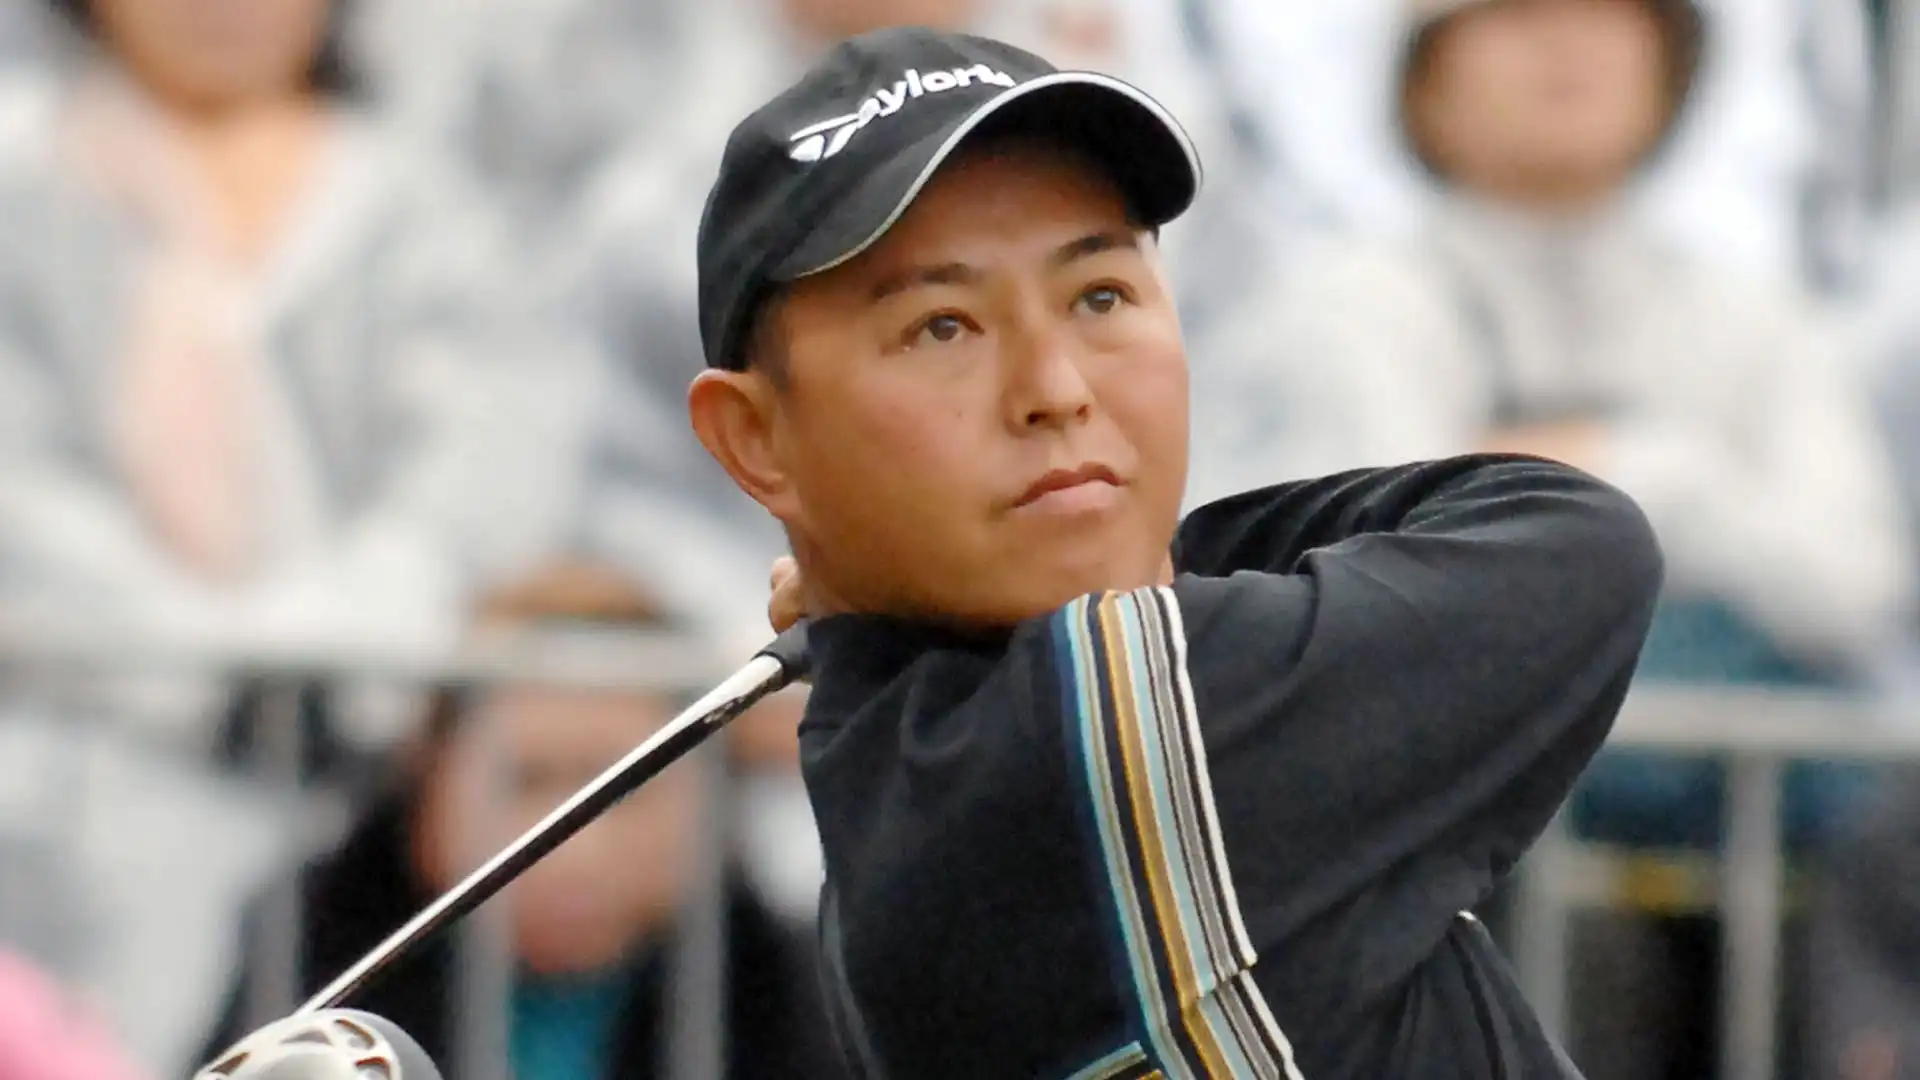 9 Toru Taniguchi: 20 vittorie. Nel 2007 e nel 2008 è stato il golfista giapponese con il migliore ranking mondiale